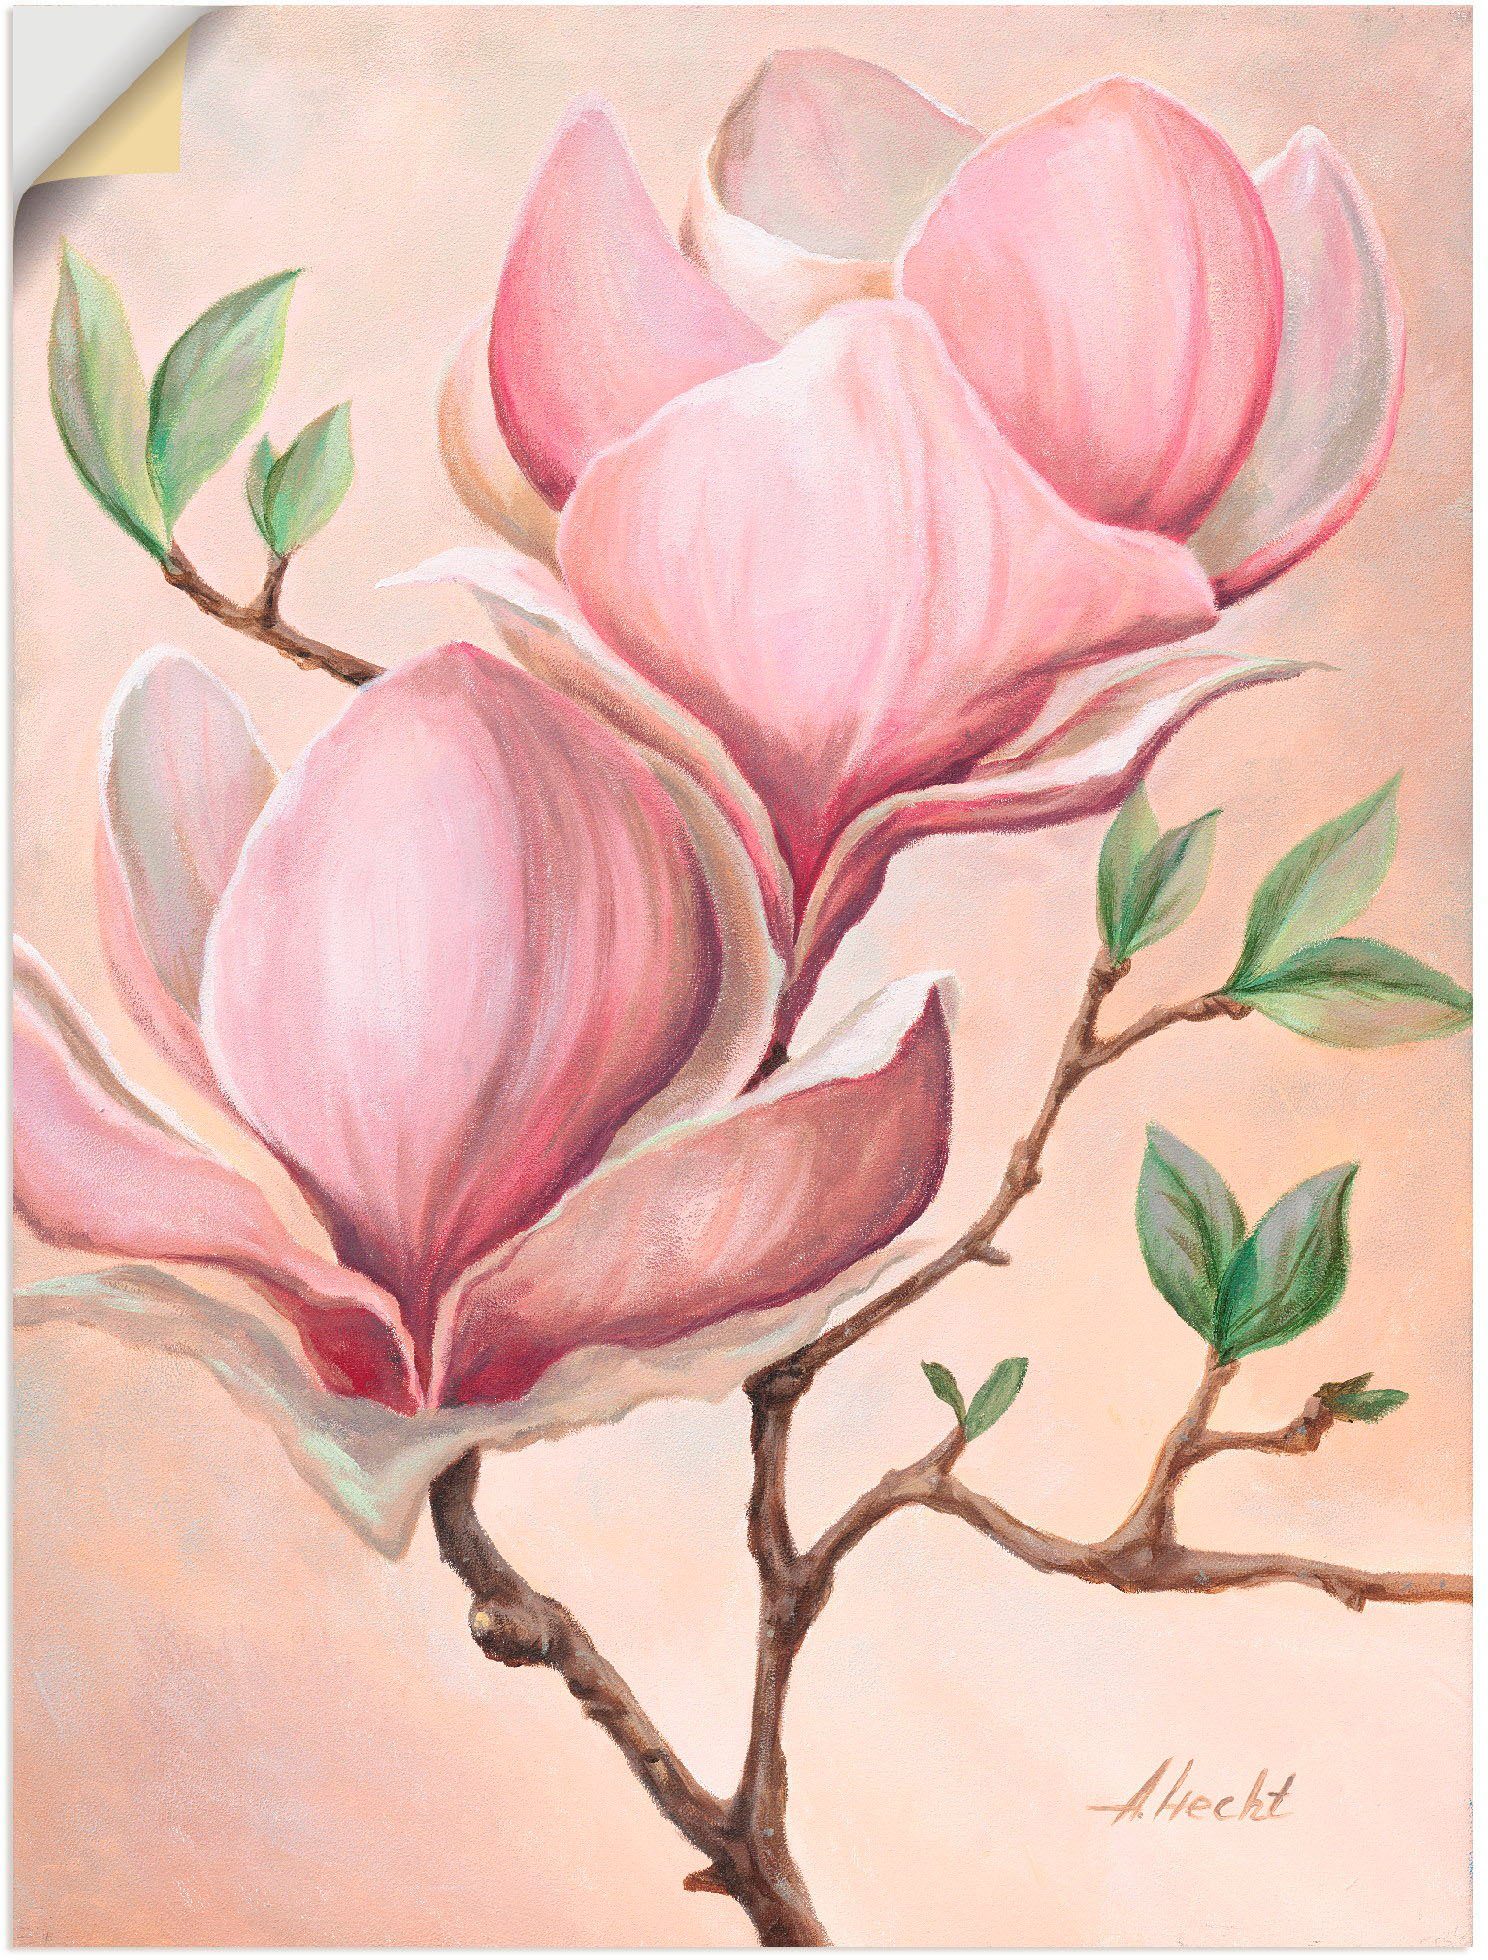 Artland Artprint Magnoliabloemen in vele afmetingen & productsoorten - artprint van aluminium / artprint voor buiten, artprint op linnen, poster, muursticker / wandfolie ook geschi